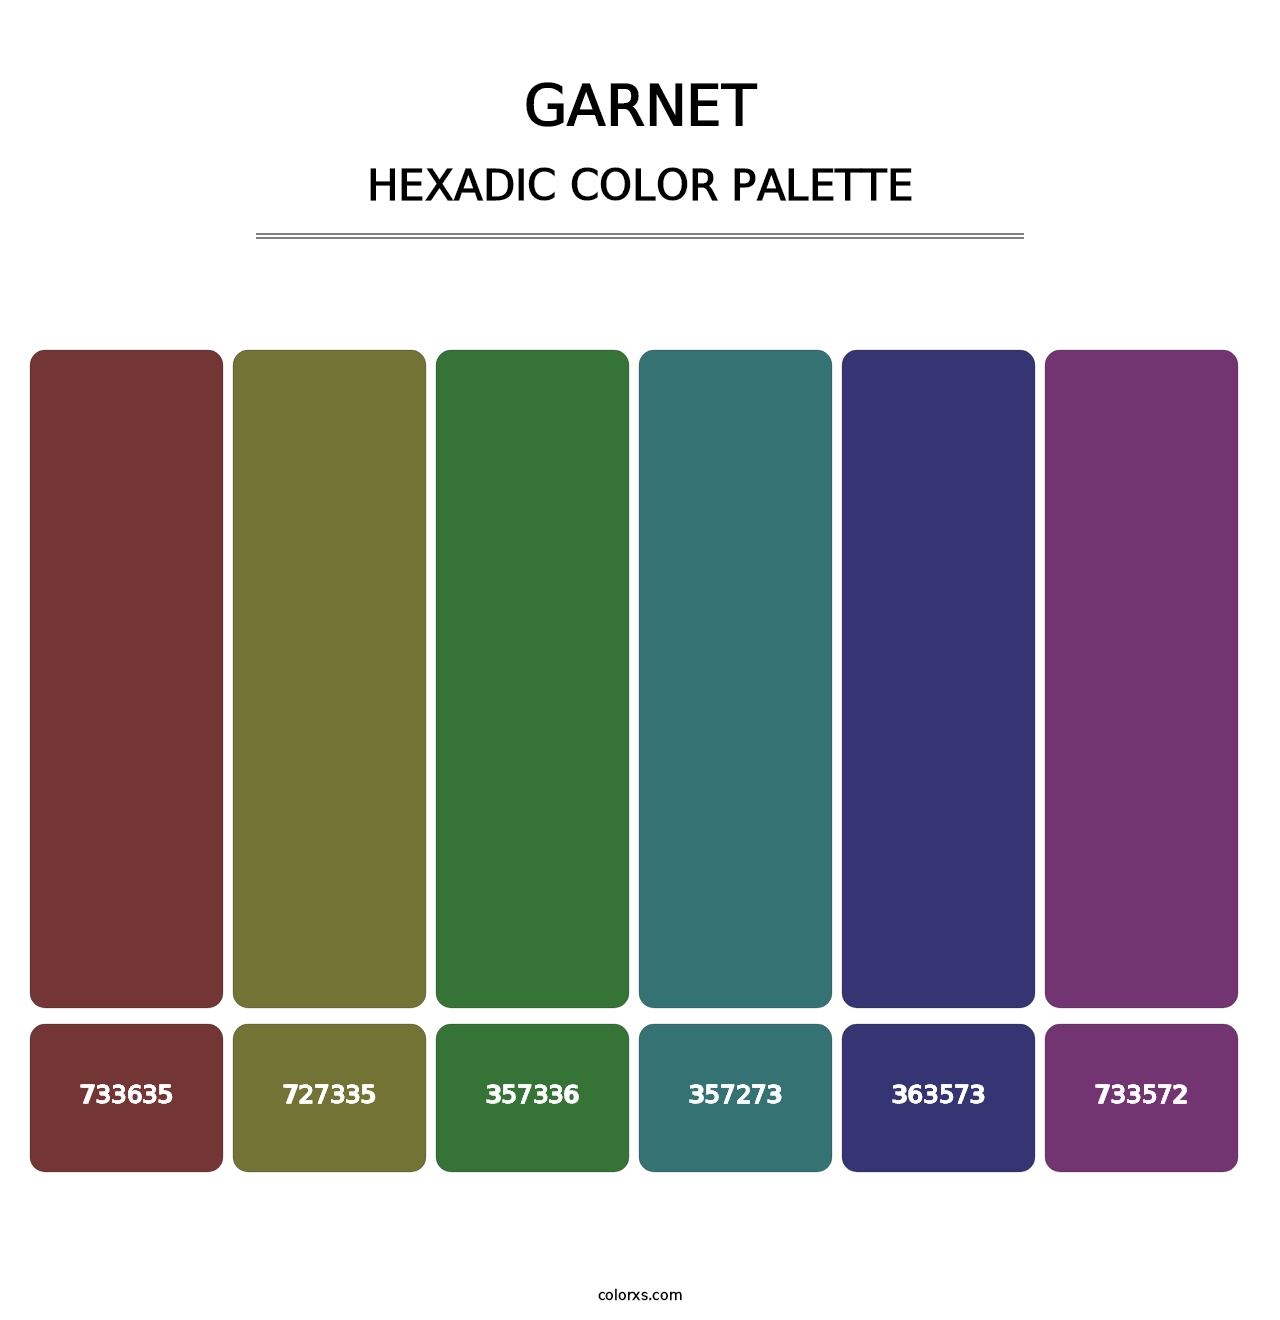 Garnet - Hexadic Color Palette